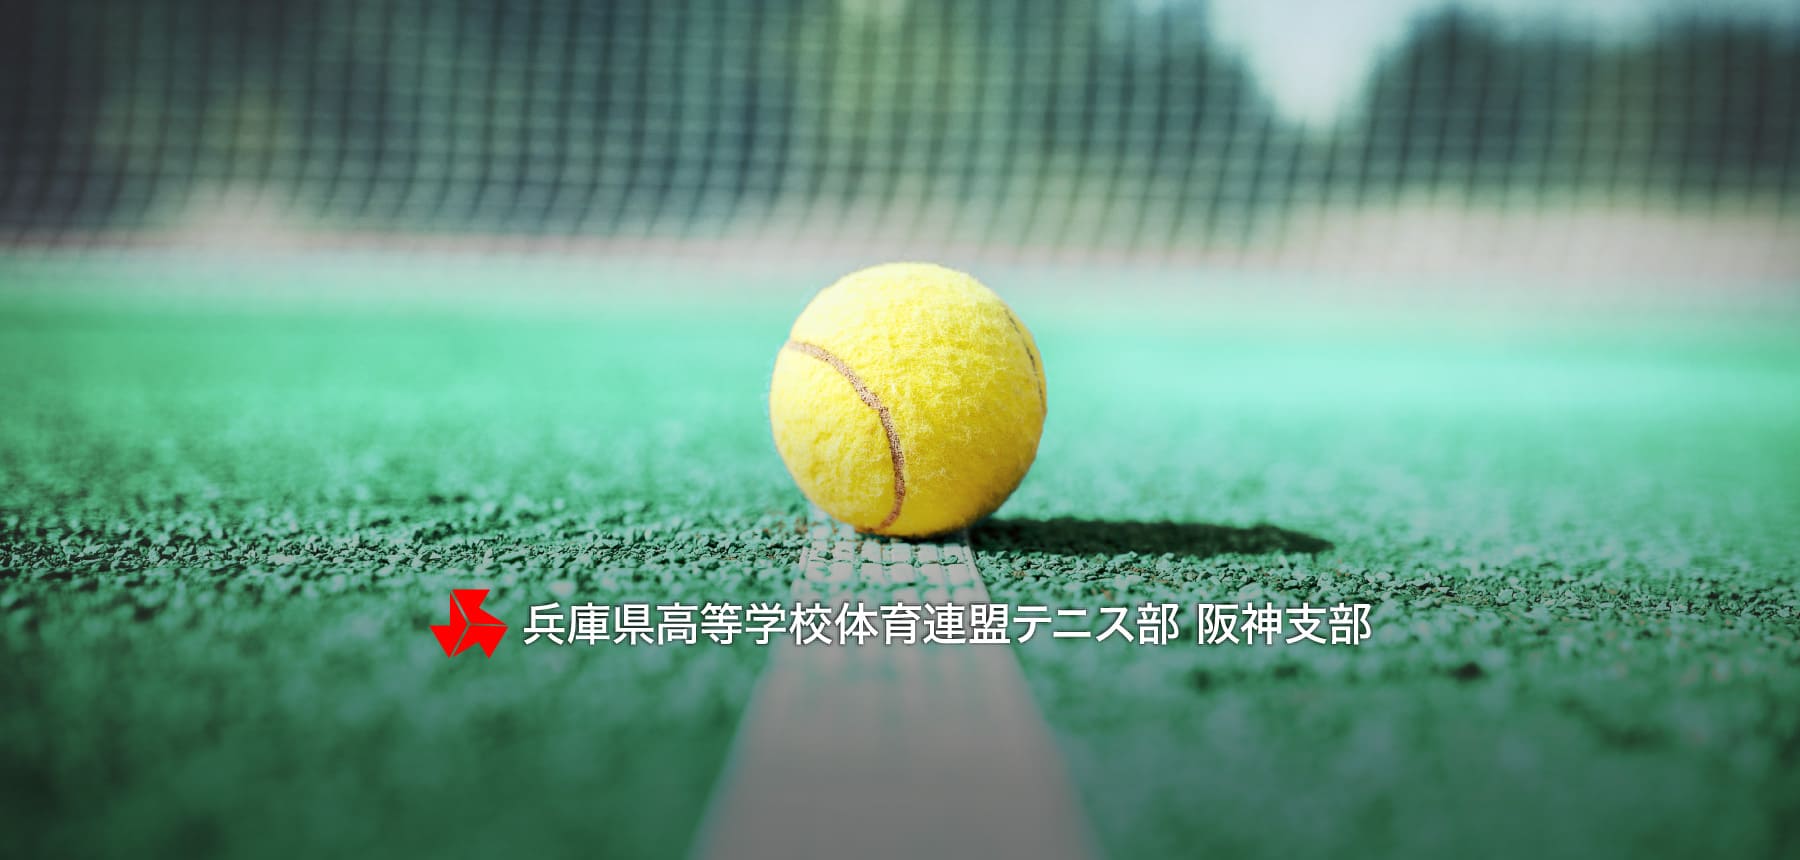 兵庫県高等学校体育連盟テニス部 阪神支部